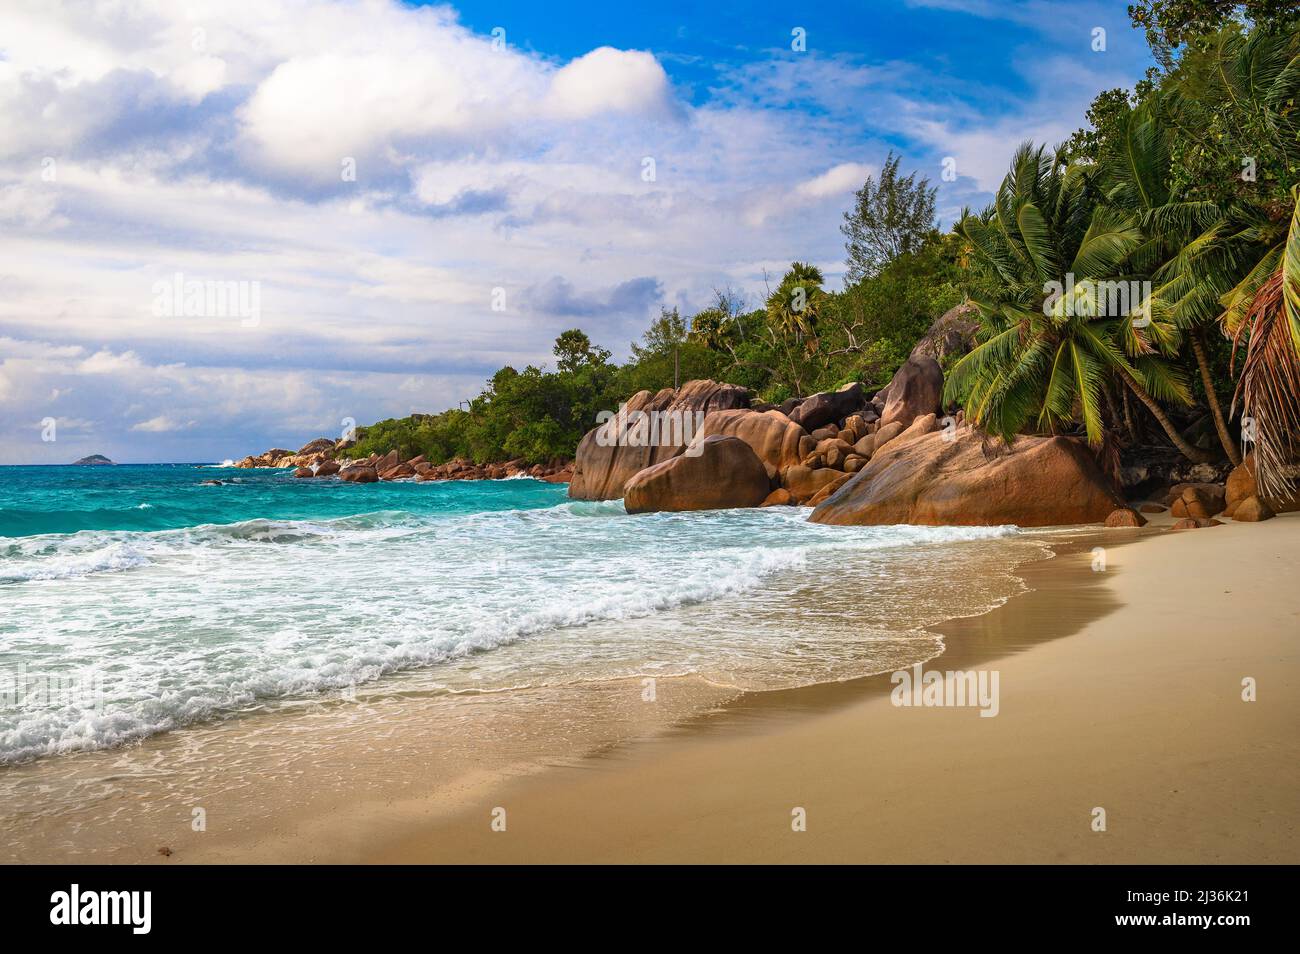 Plage d'Anse Lazio sur l'île de Praslin, Seychelles Banque D'Images